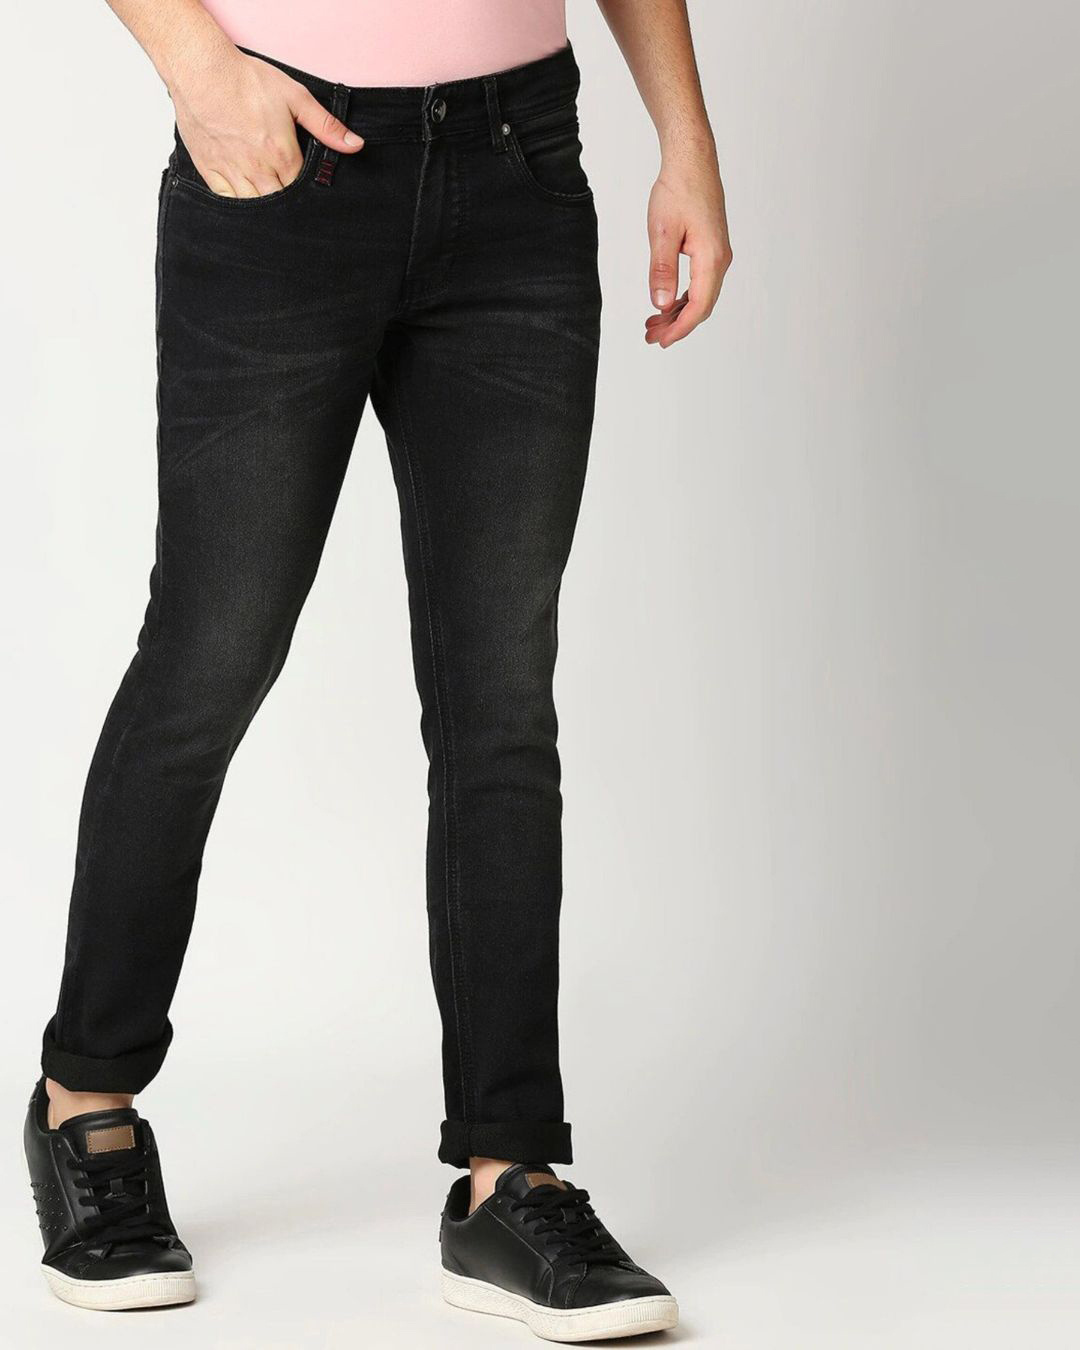 Buy Men's Black Jeans Online at Bewakoof